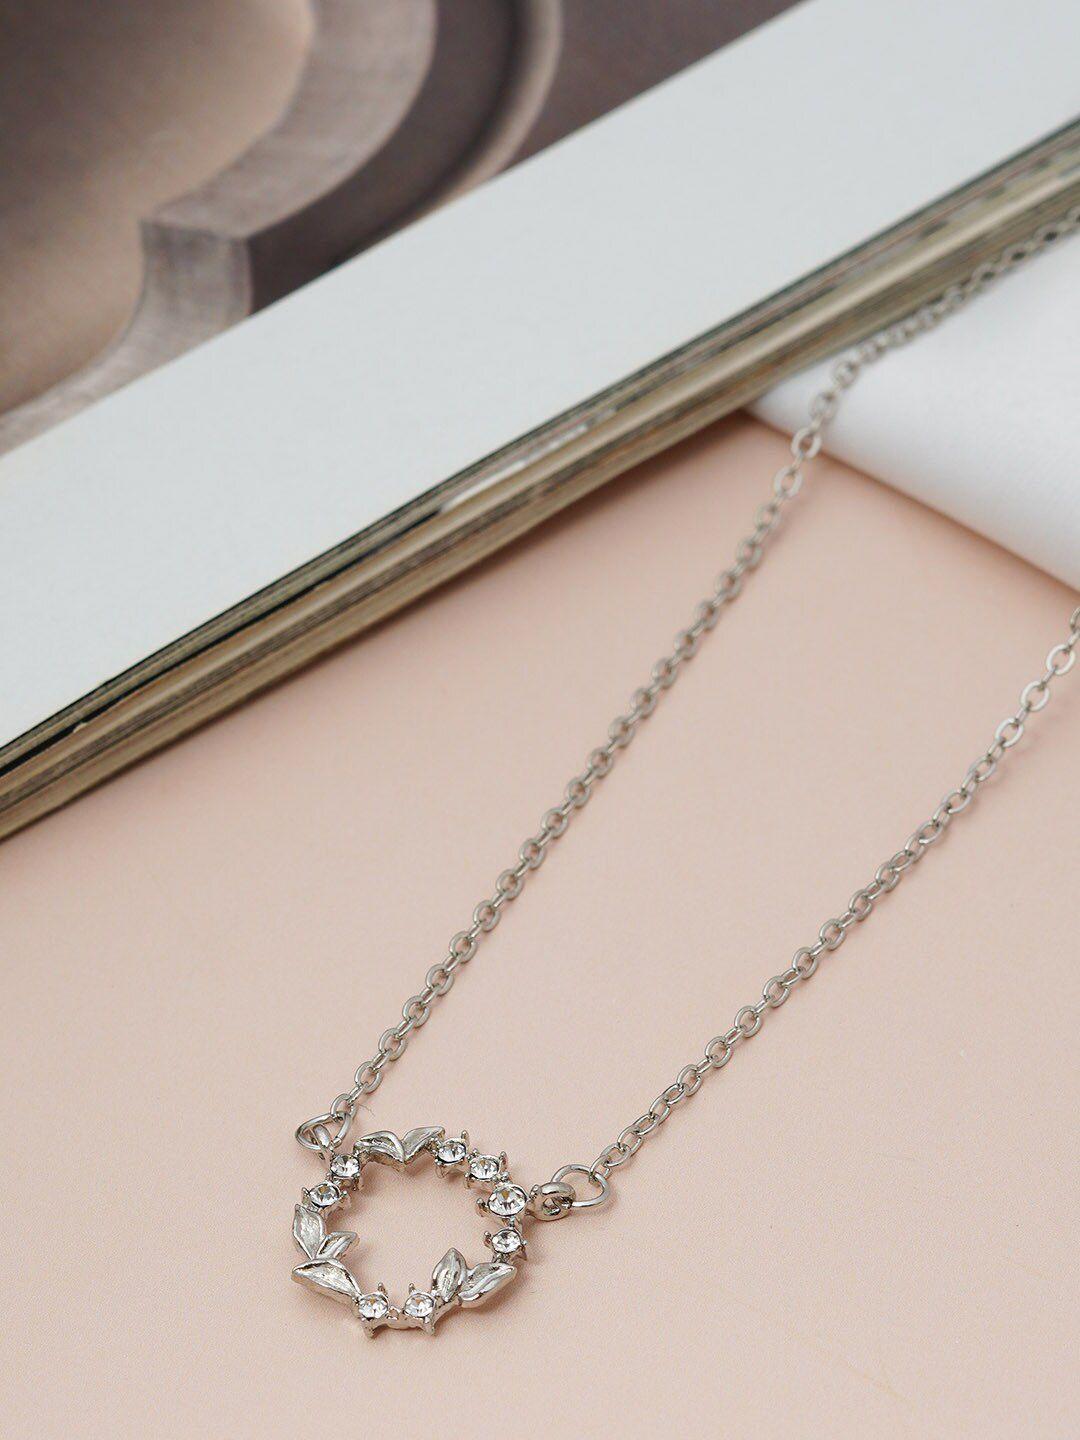 ferosh silver-toned & white silver necklace